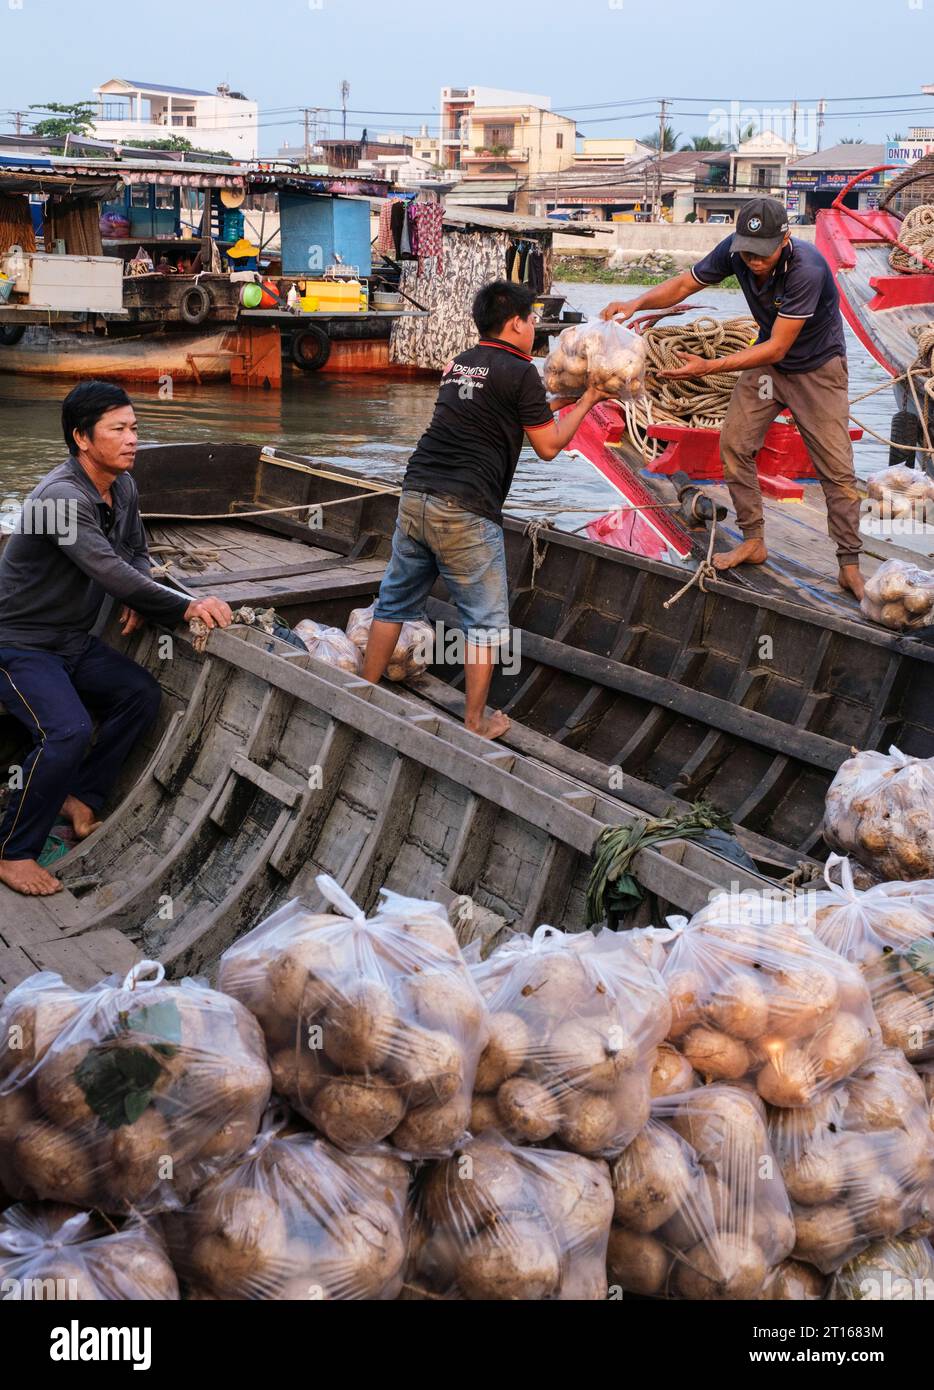 Scène du marché flottant de Fong Dien, près de CAN Tho, Vietnam. Vendeur transférant les produits du vendeur à l'acheteur. Banque D'Images